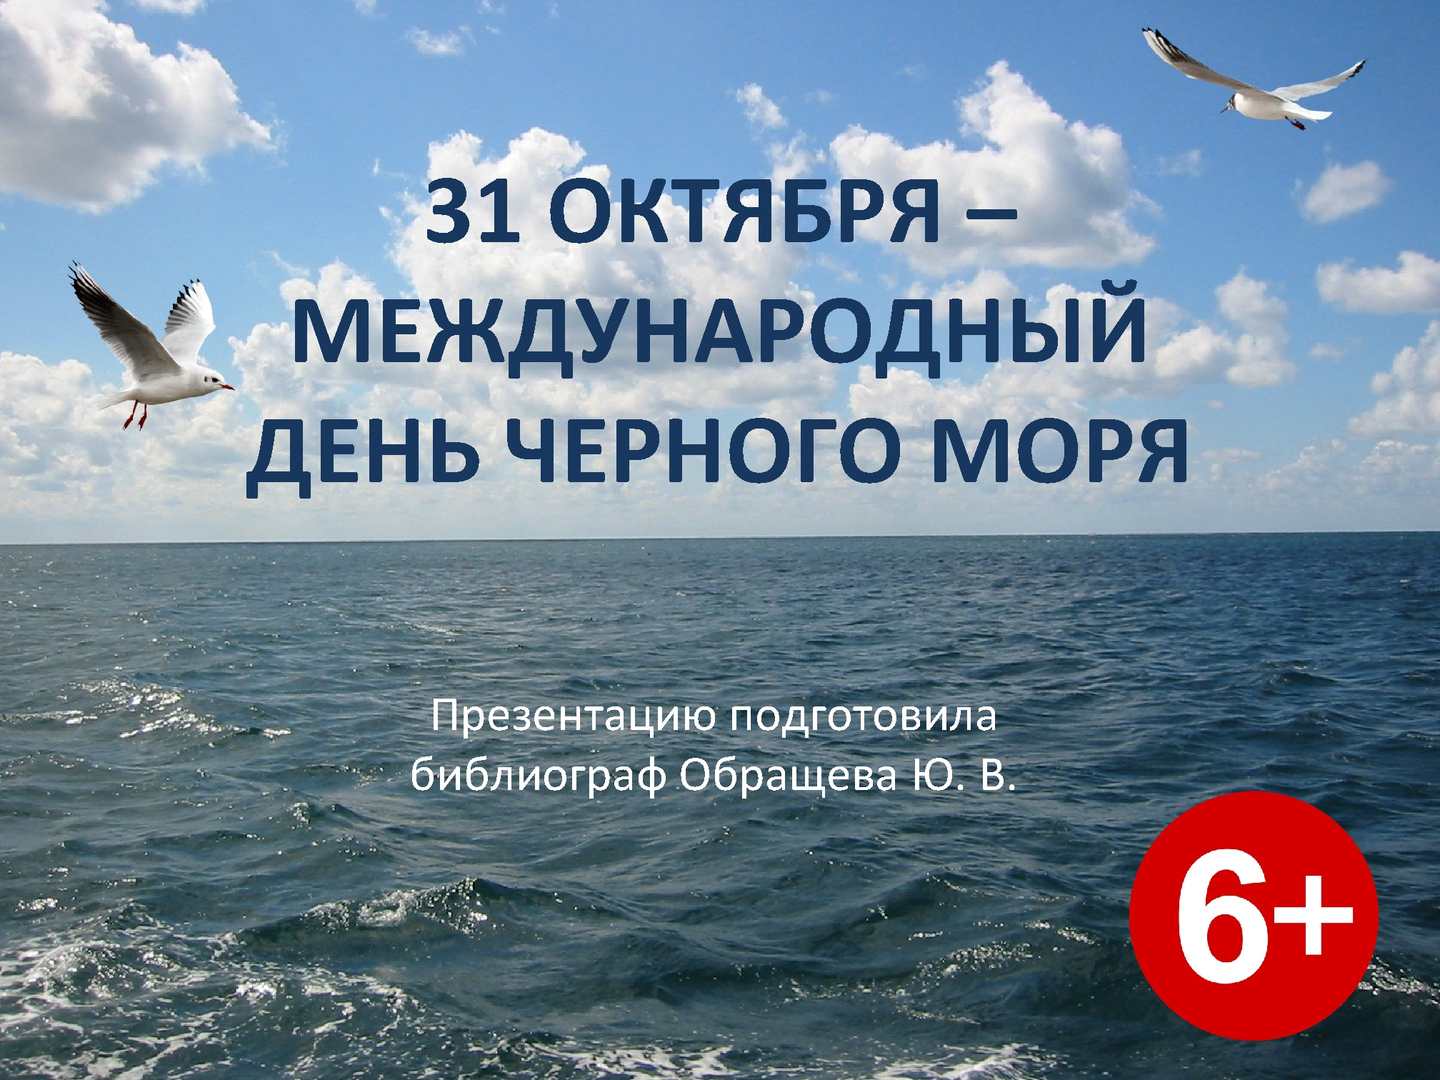 Картинки на день Черного моря (1)